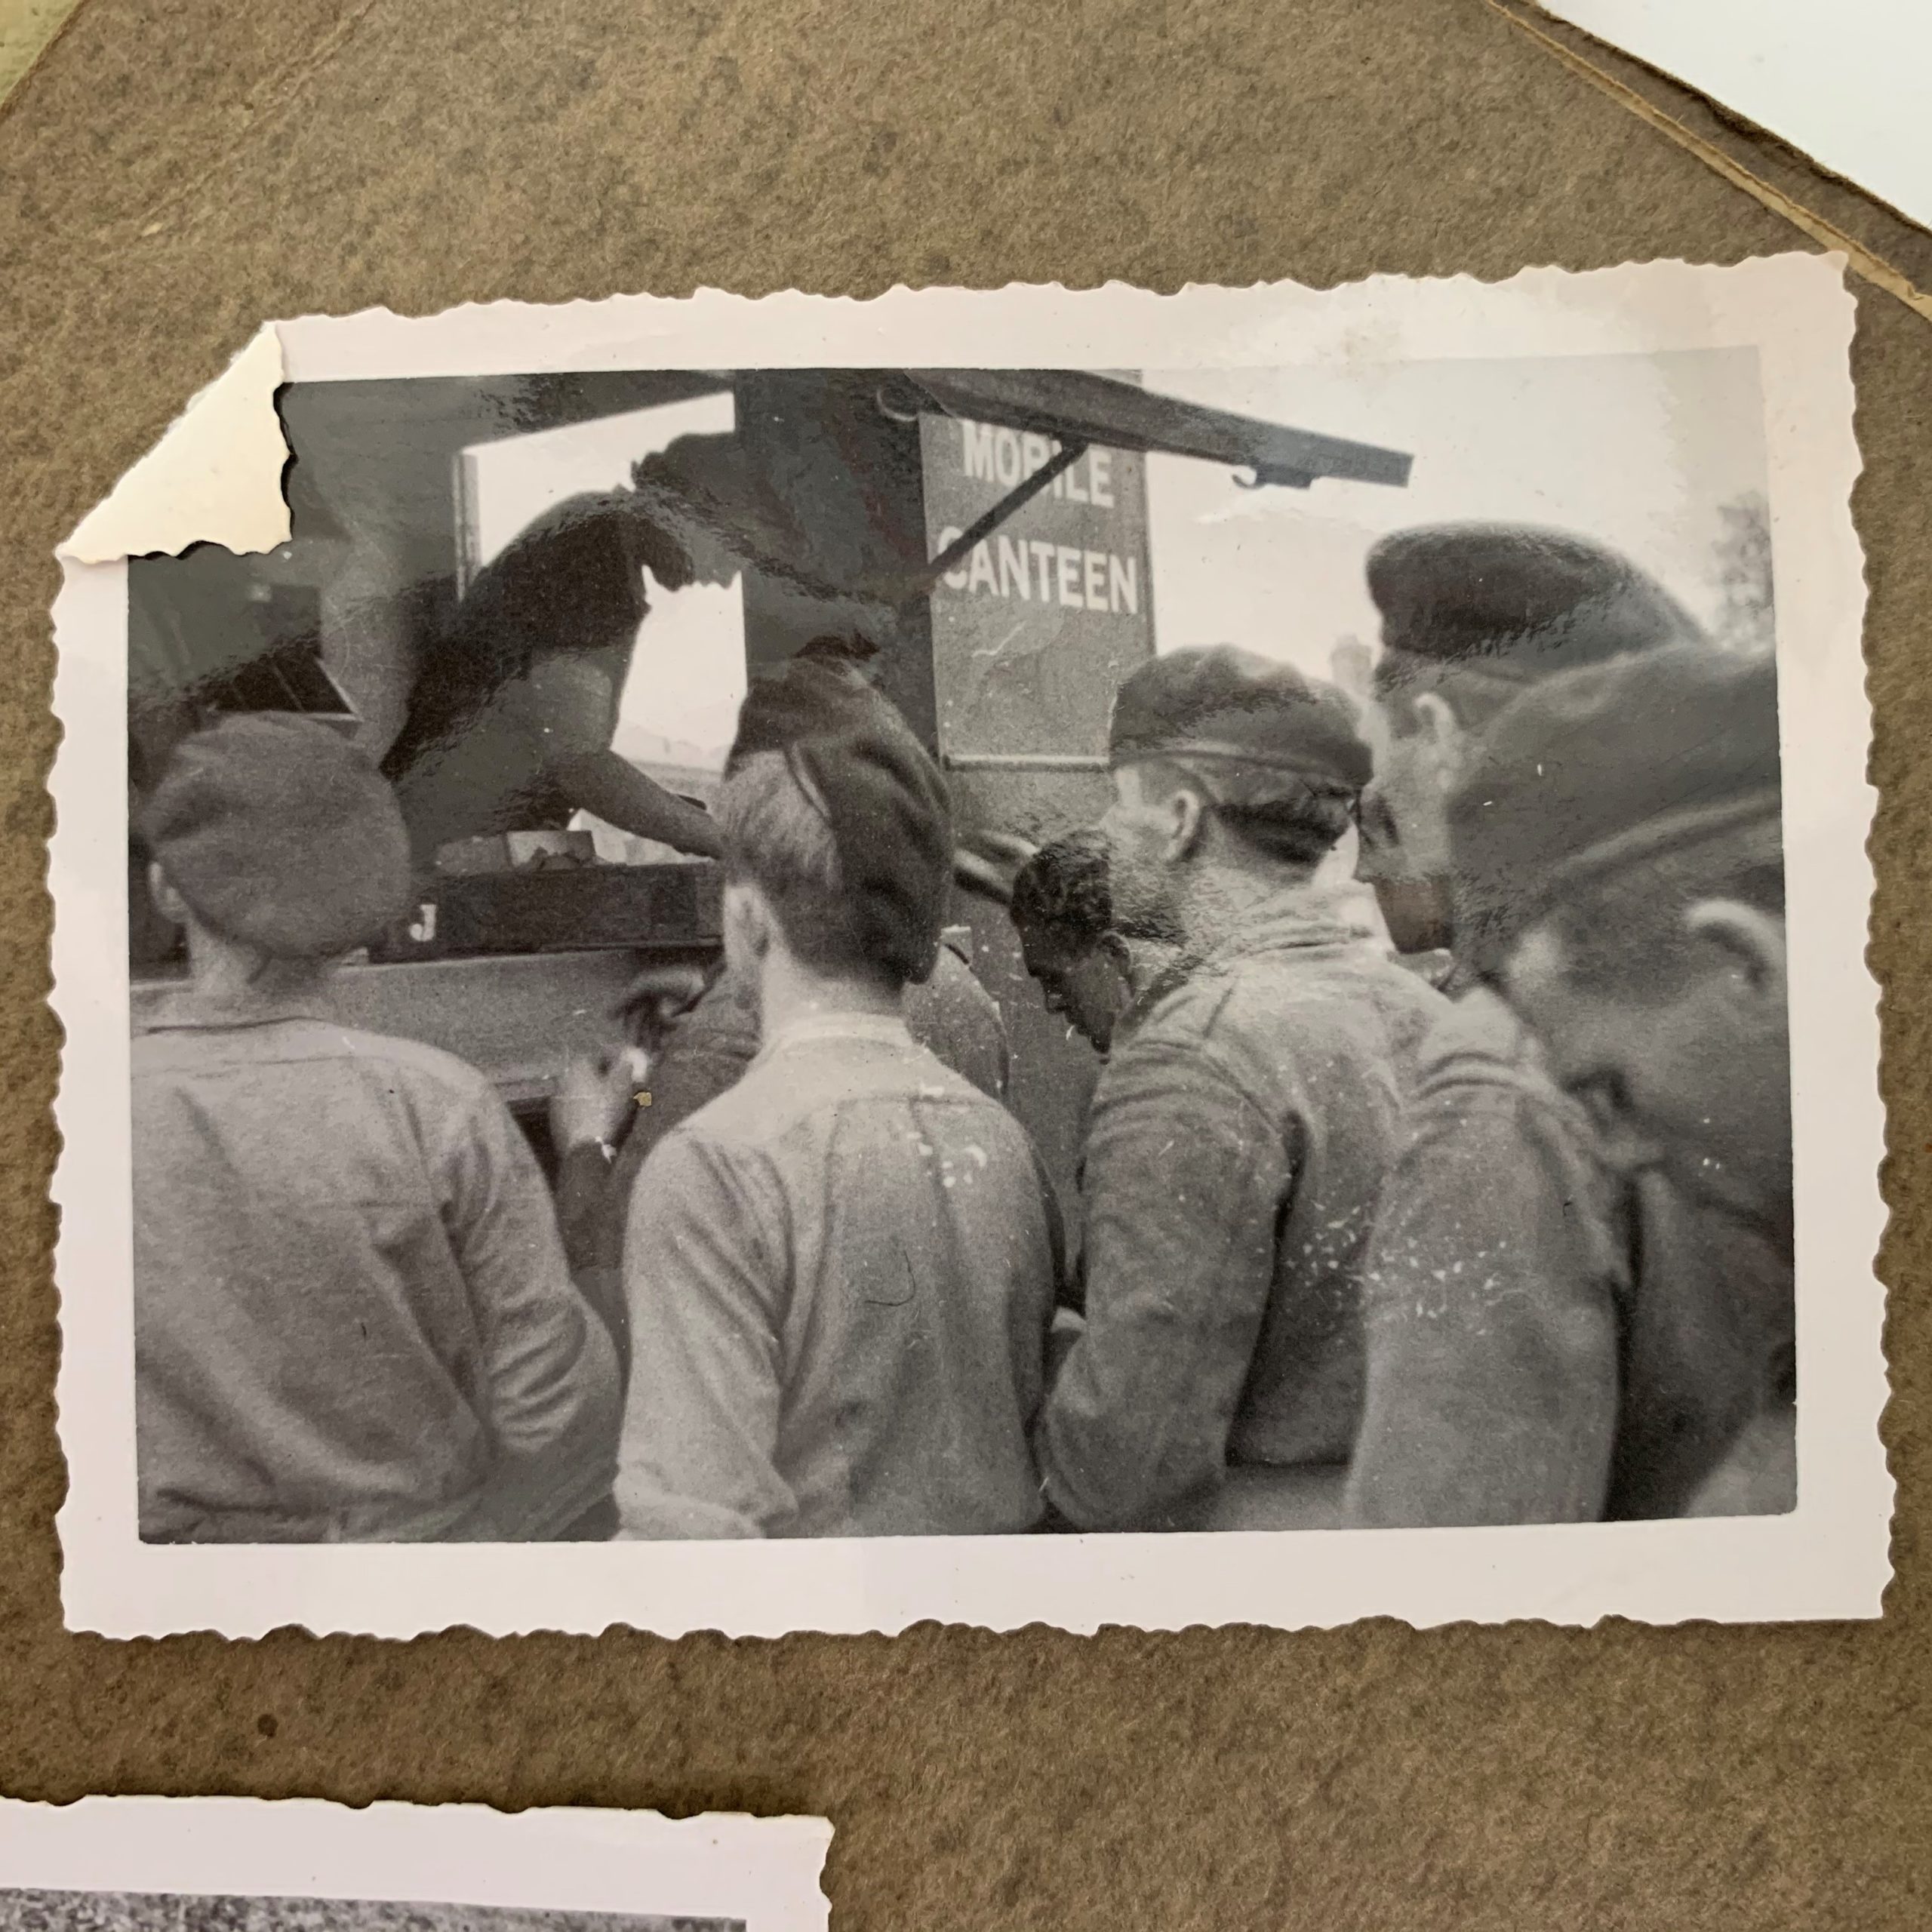 Een oude zwart-witte foto in een fotoboek geplakt waarop je de achterkant van soldaten met petten op ziet staan, ze staan gericht naar een kraam.